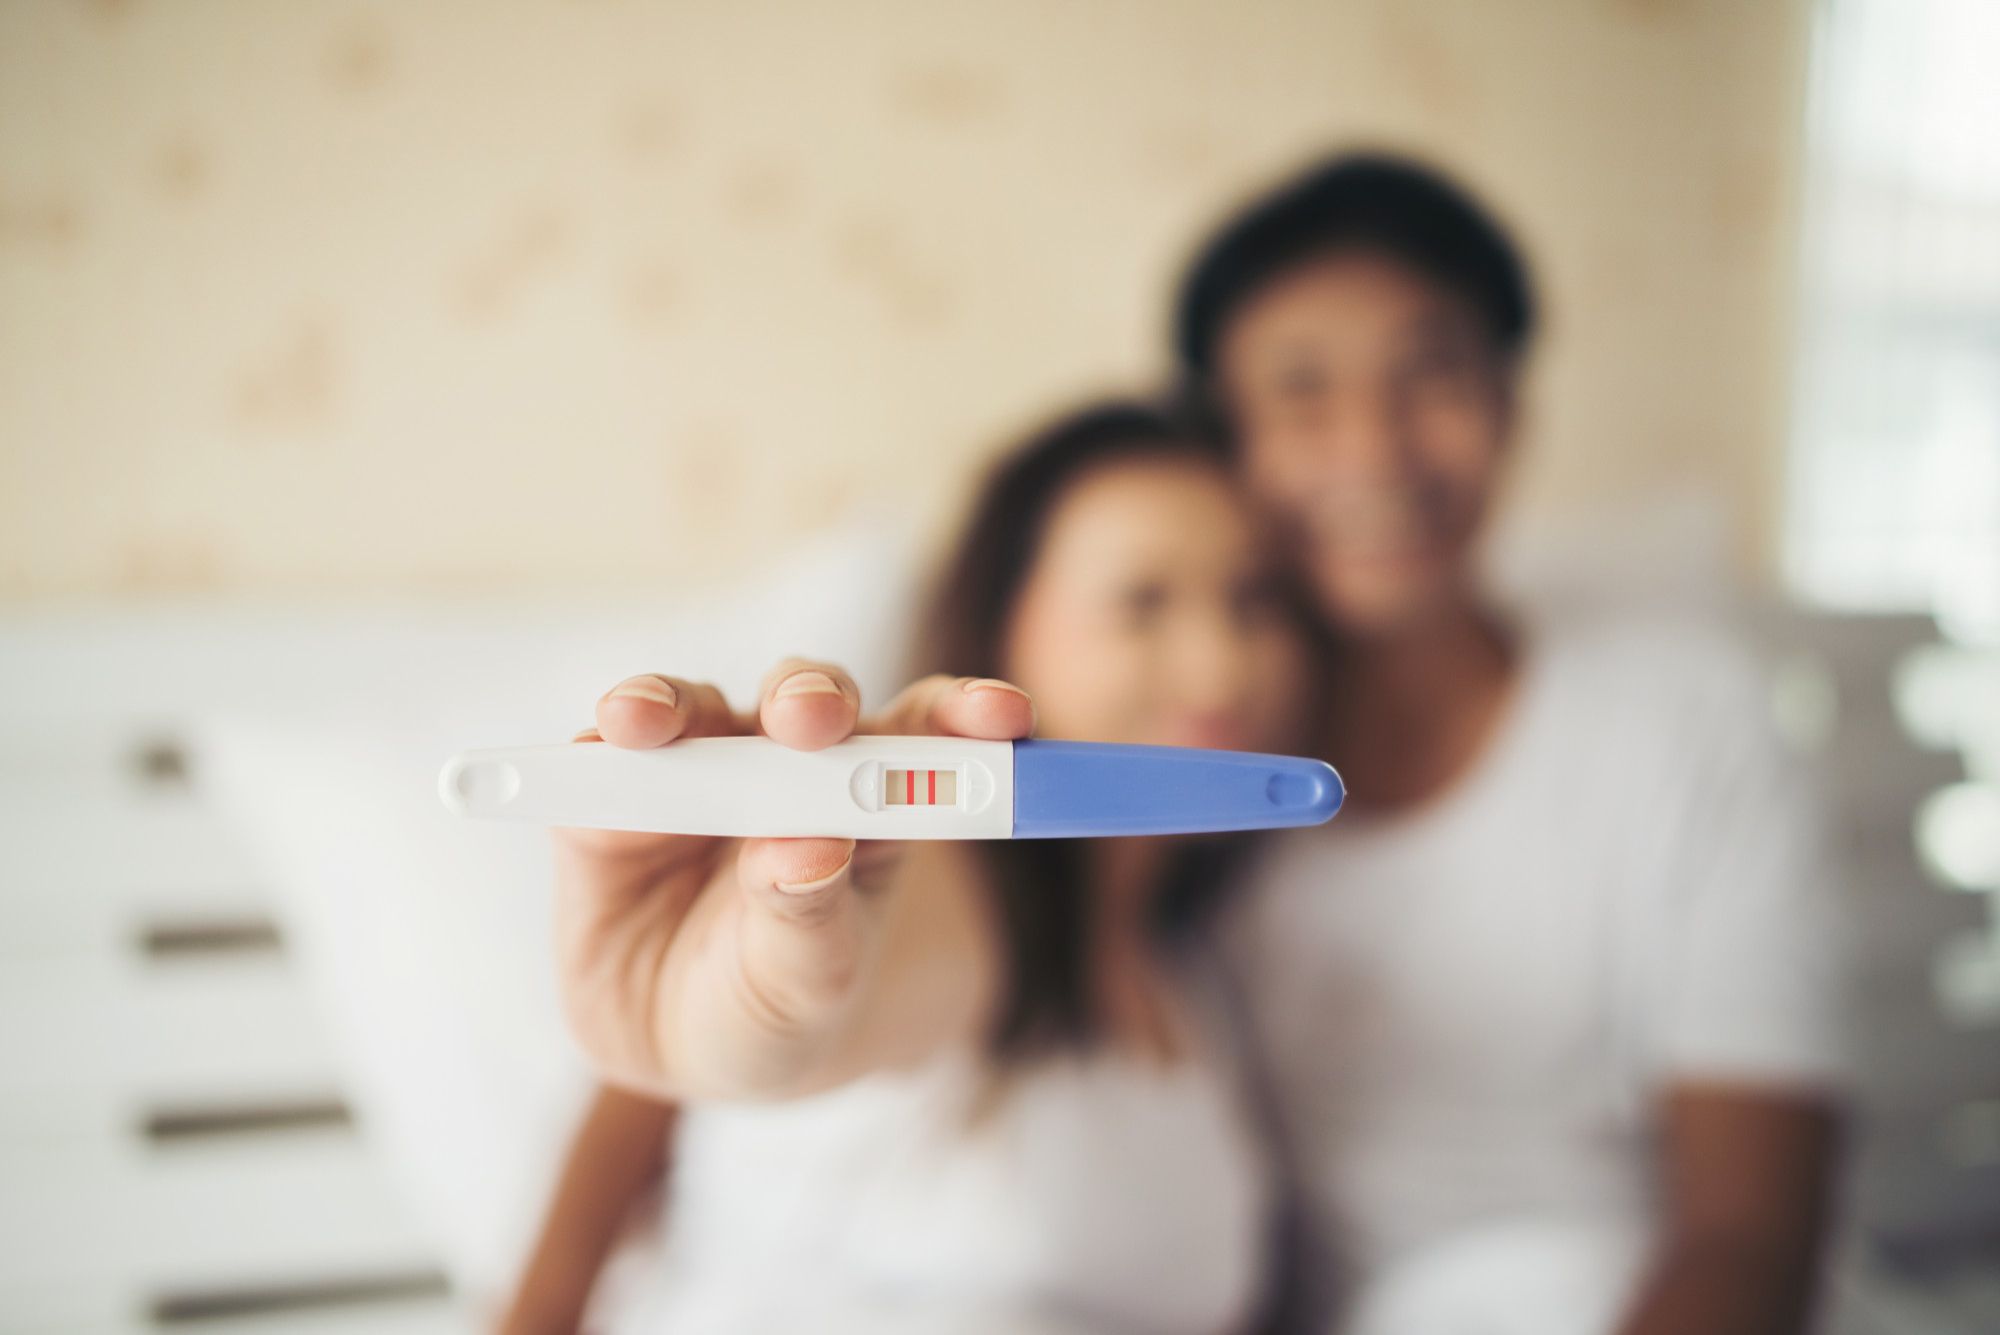 Фото с тестом на беременность красивое